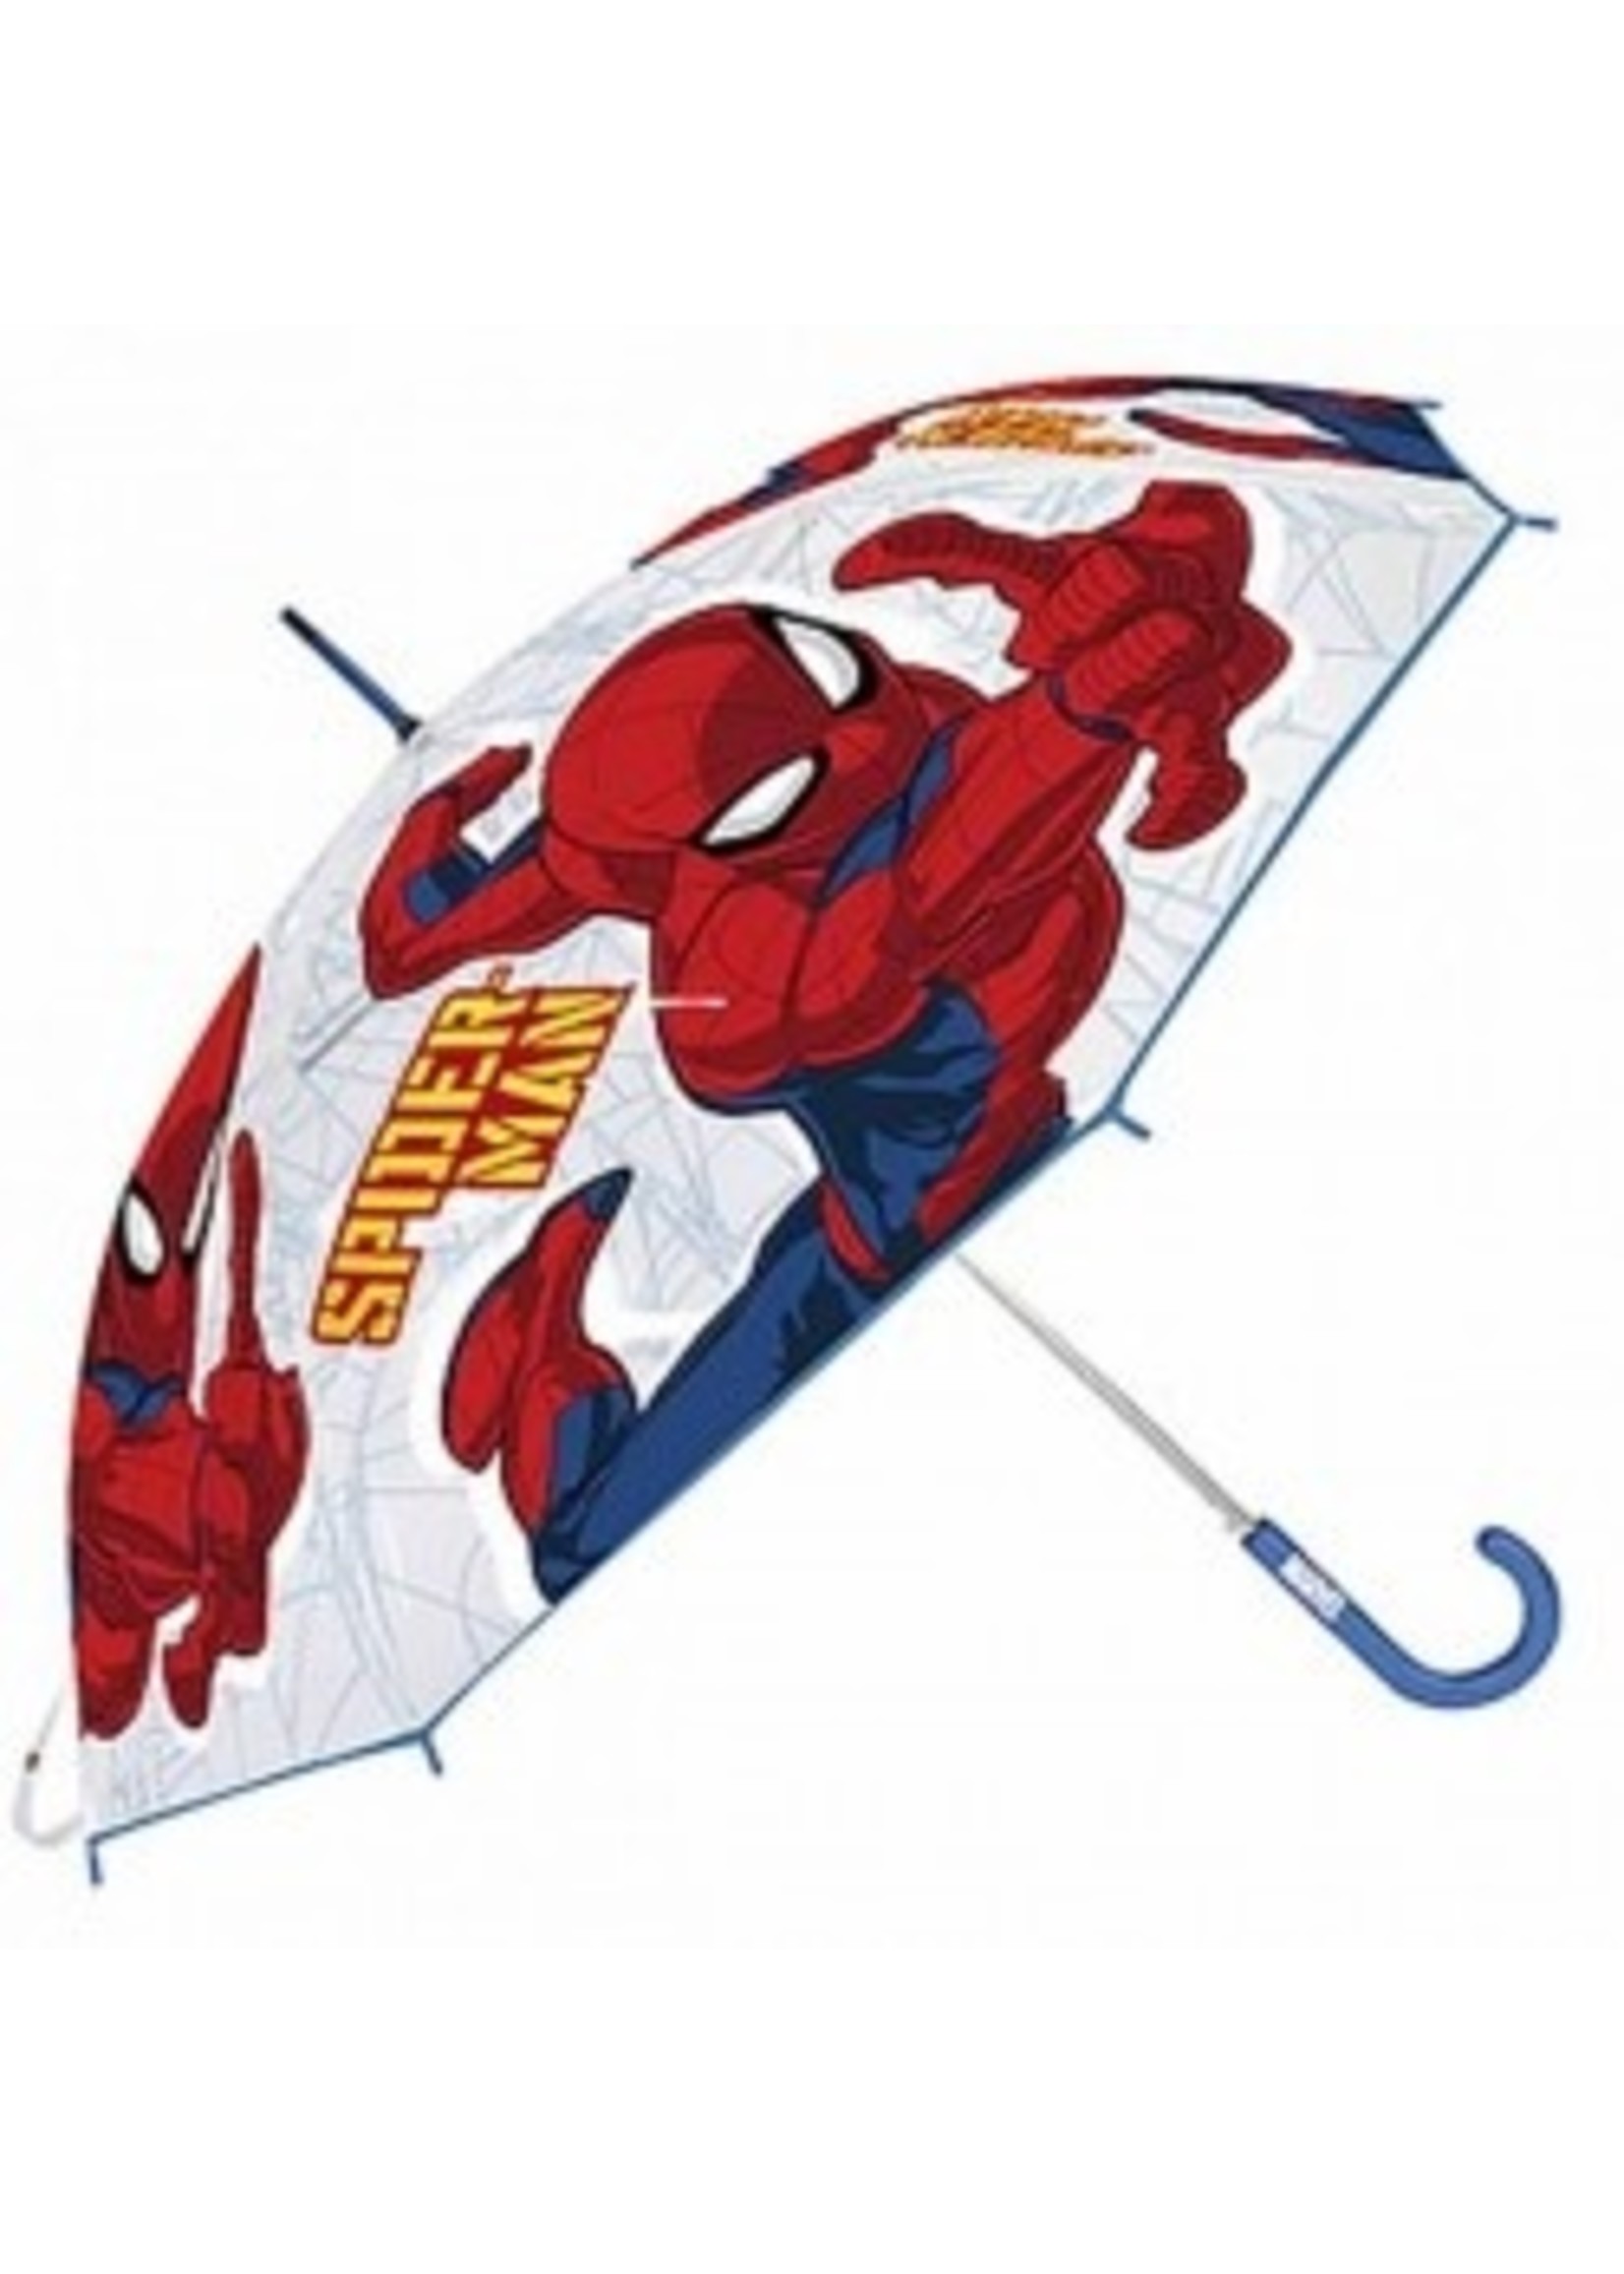 Marvel Spiderman umbrella from Marvel